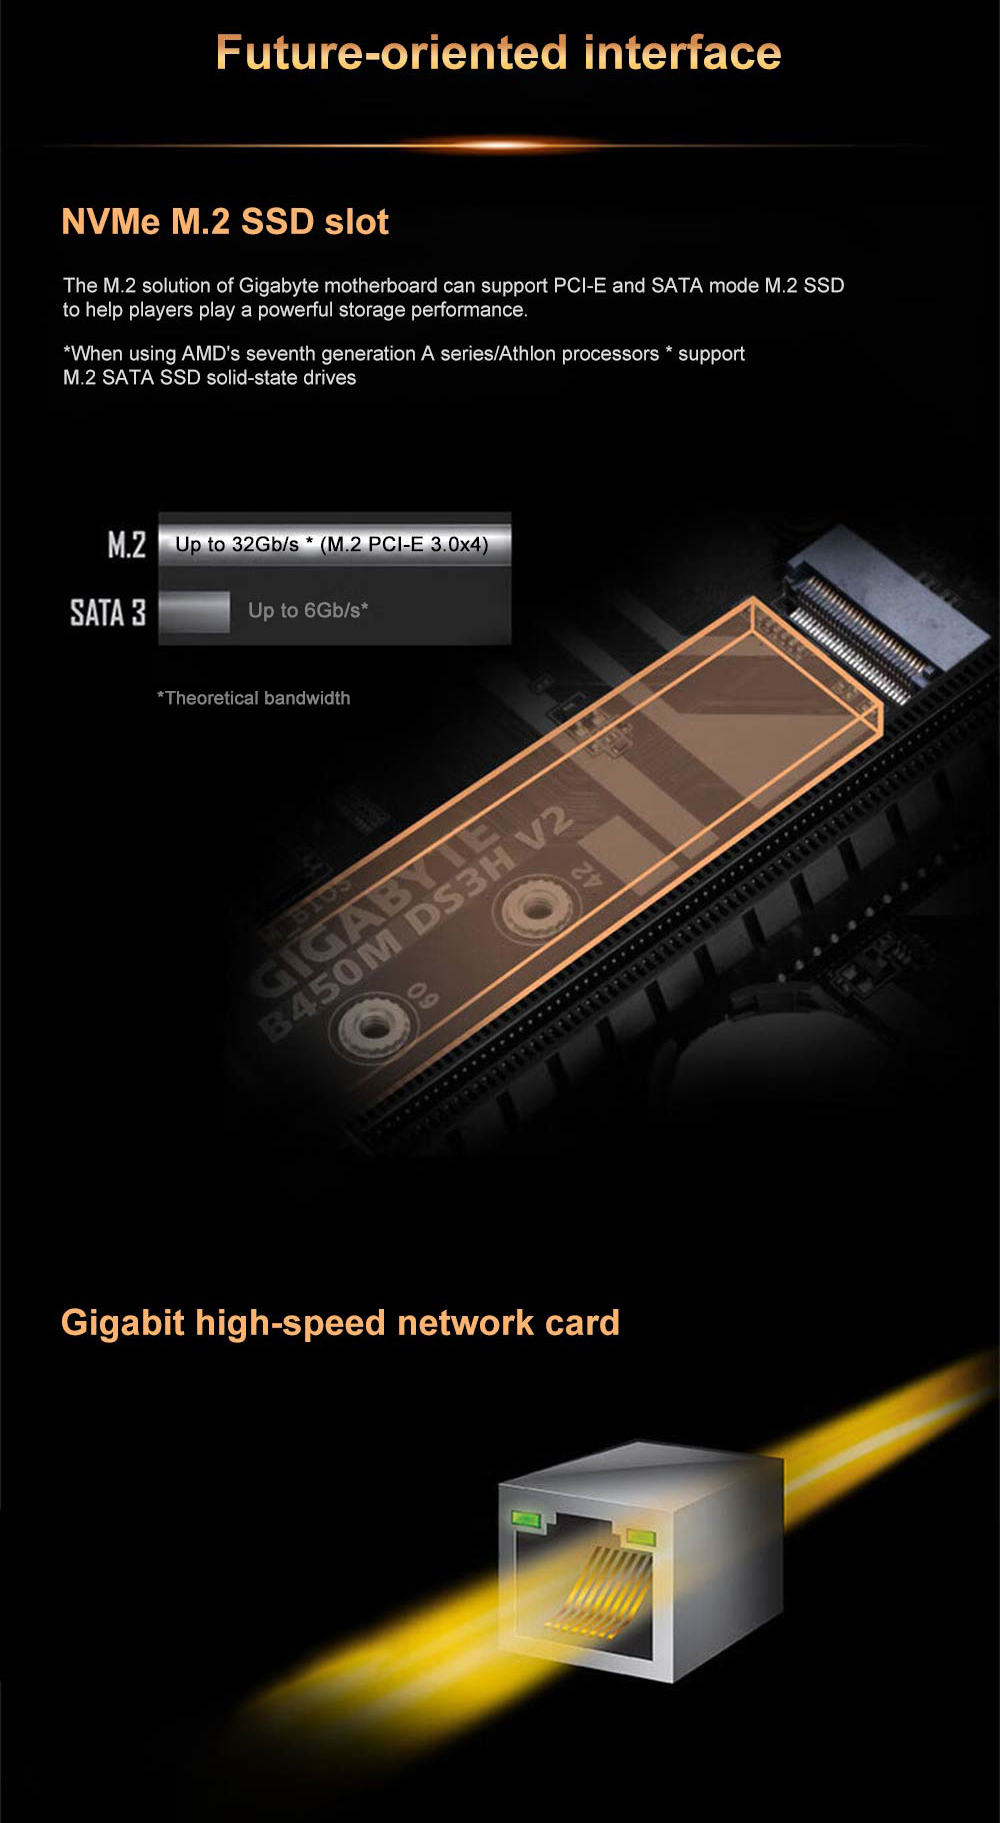 Gigabyte B450M DS3H V2 nuova scheda madre + AMD nuovo Ryzen 5 5600 R5 5600 Socket CPU processore di gioco AM4 6-Core 12-Thread 65W DDR4